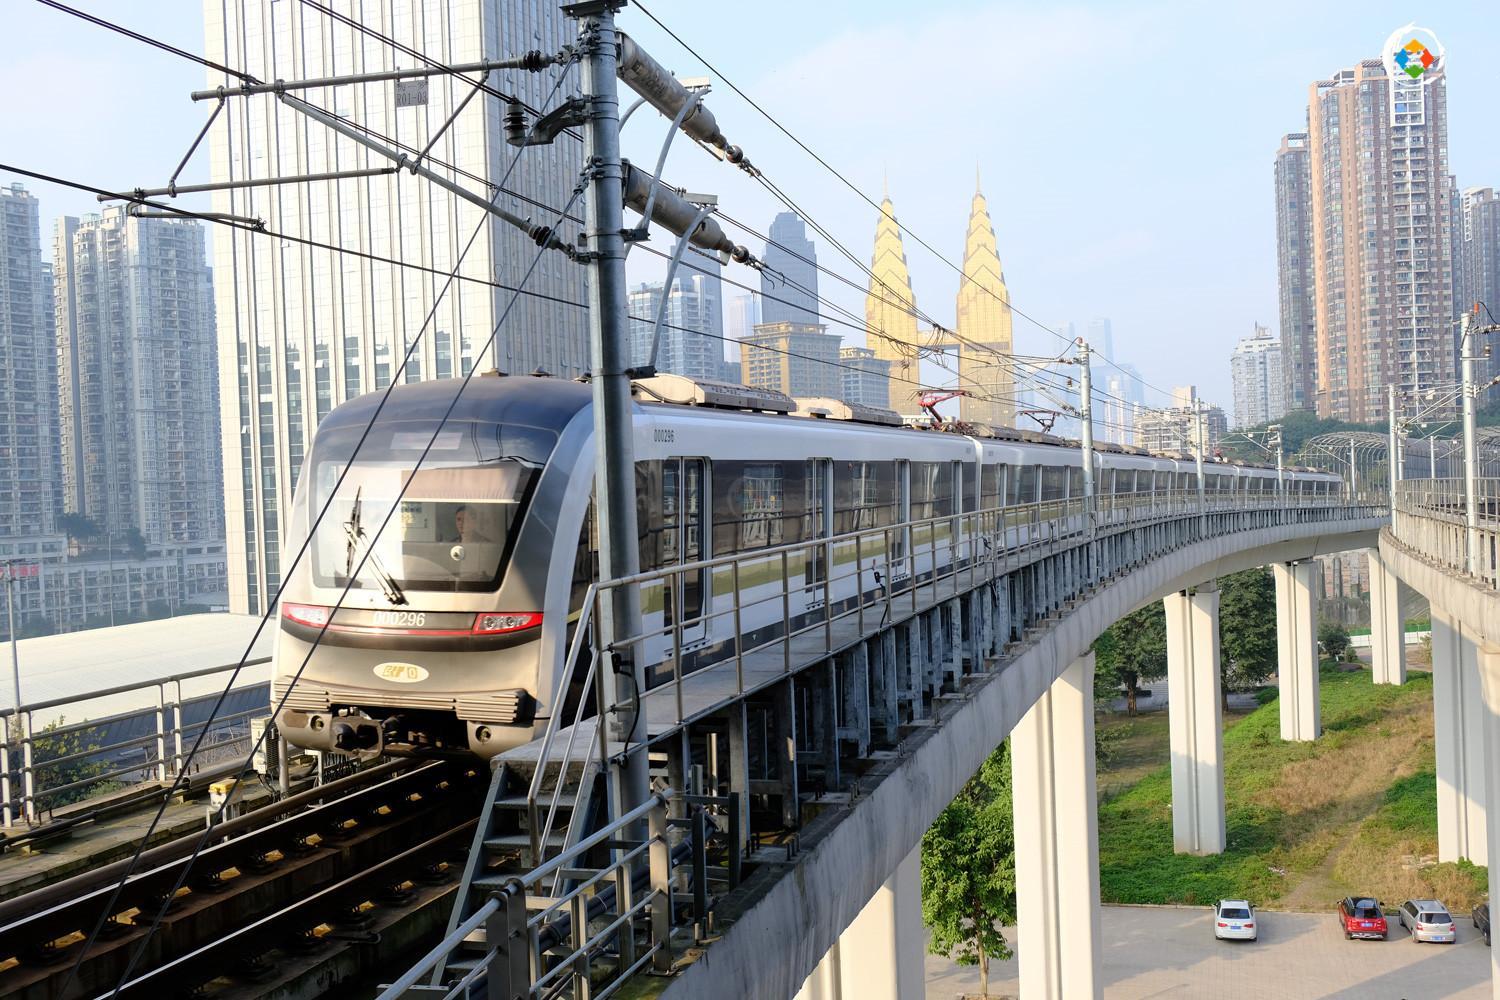 投资106亿元,建设工期5年,重庆轨道4号线将新增9个站点